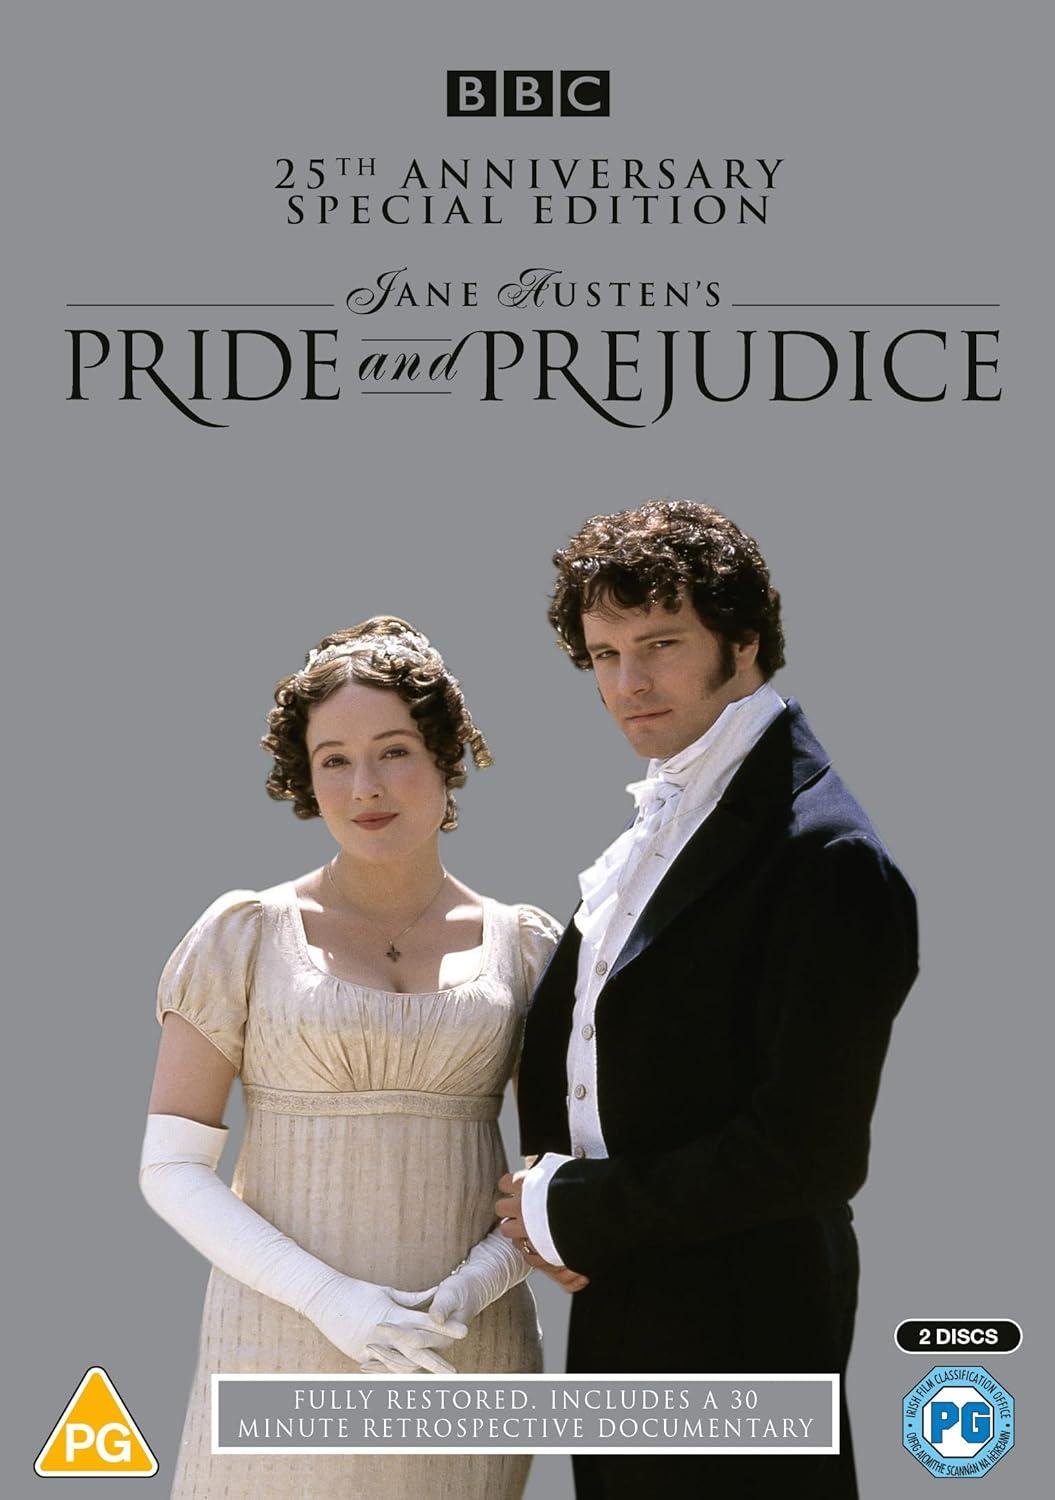 Pride and Prejudice (2009) 2 DVD